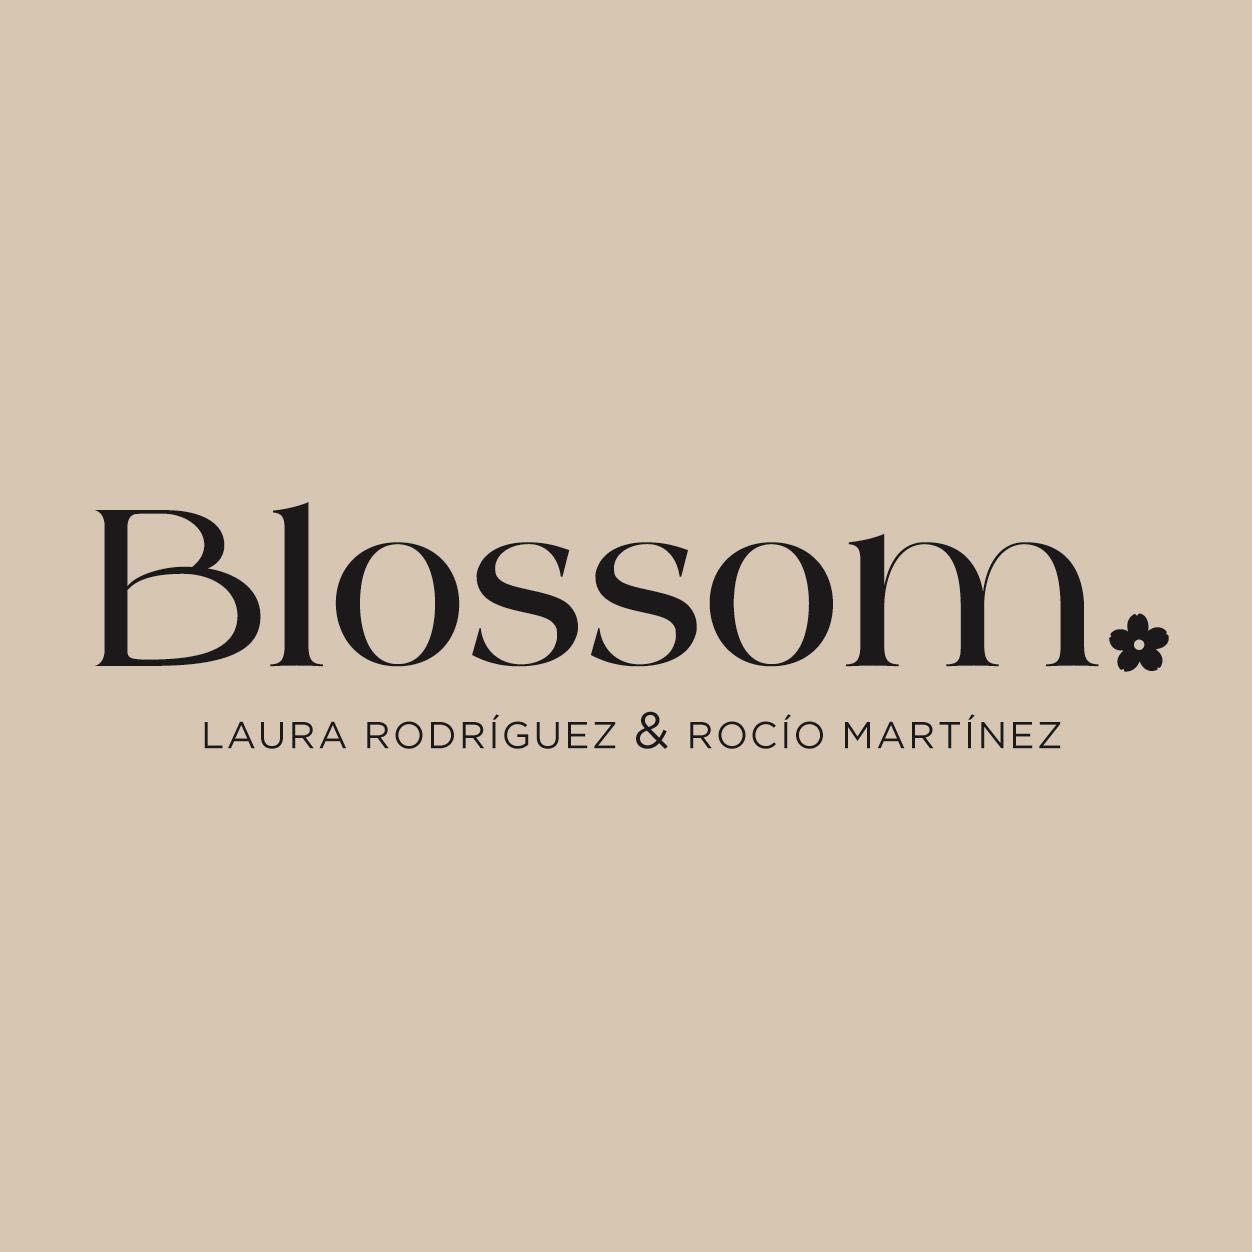 Blossom, Avenida Arroyo del moro, 14 local, 14011, Córdoba